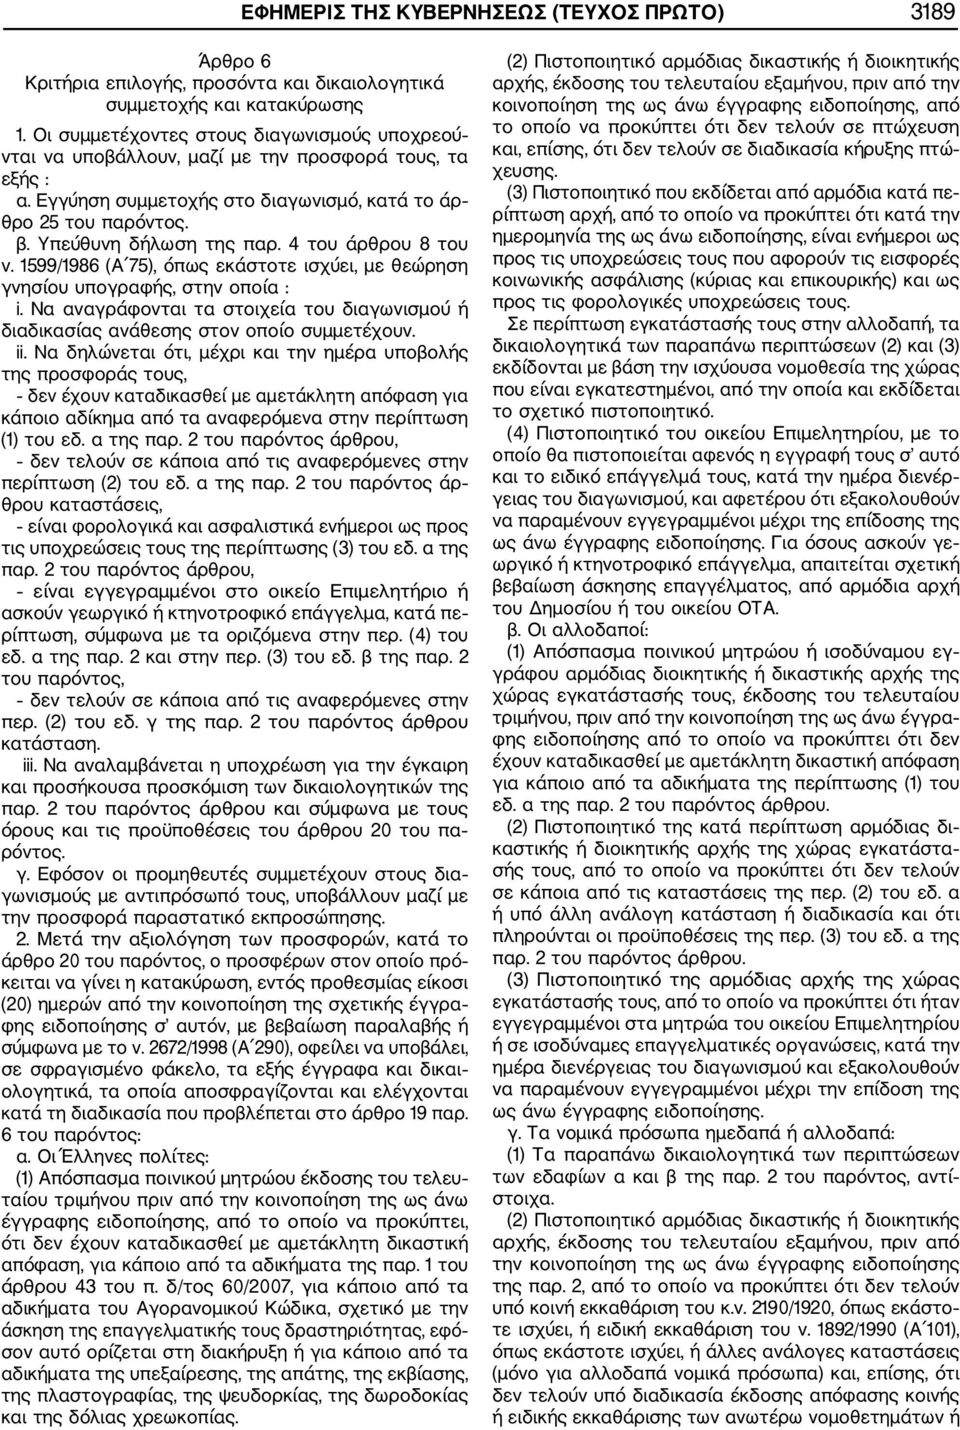 4 του άρθρου 8 του ν. 1599/1986 (Α 75), όπως εκάστοτε ισχύει, με θεώρηση γνησίου υπογραφής, στην οποία : i. Να αναγράφονται τα στοιχεία του διαγωνισμού ή διαδικασίας ανάθεσης στον οποίο συμμετέχουν.